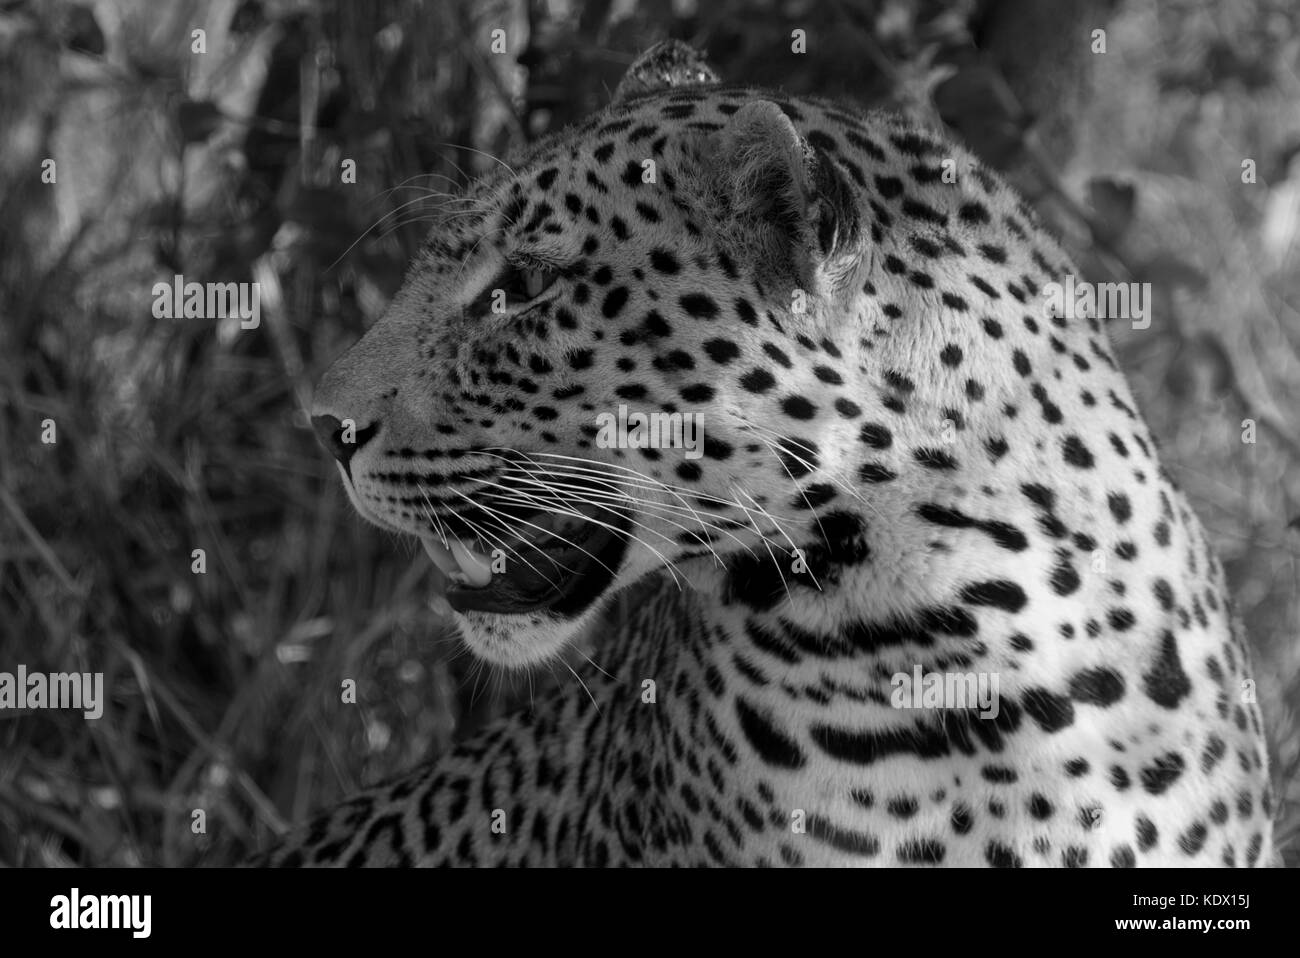 Homme leopard portrait, noir et blanc, timbavati game reserve, afrique du sud Banque D'Images